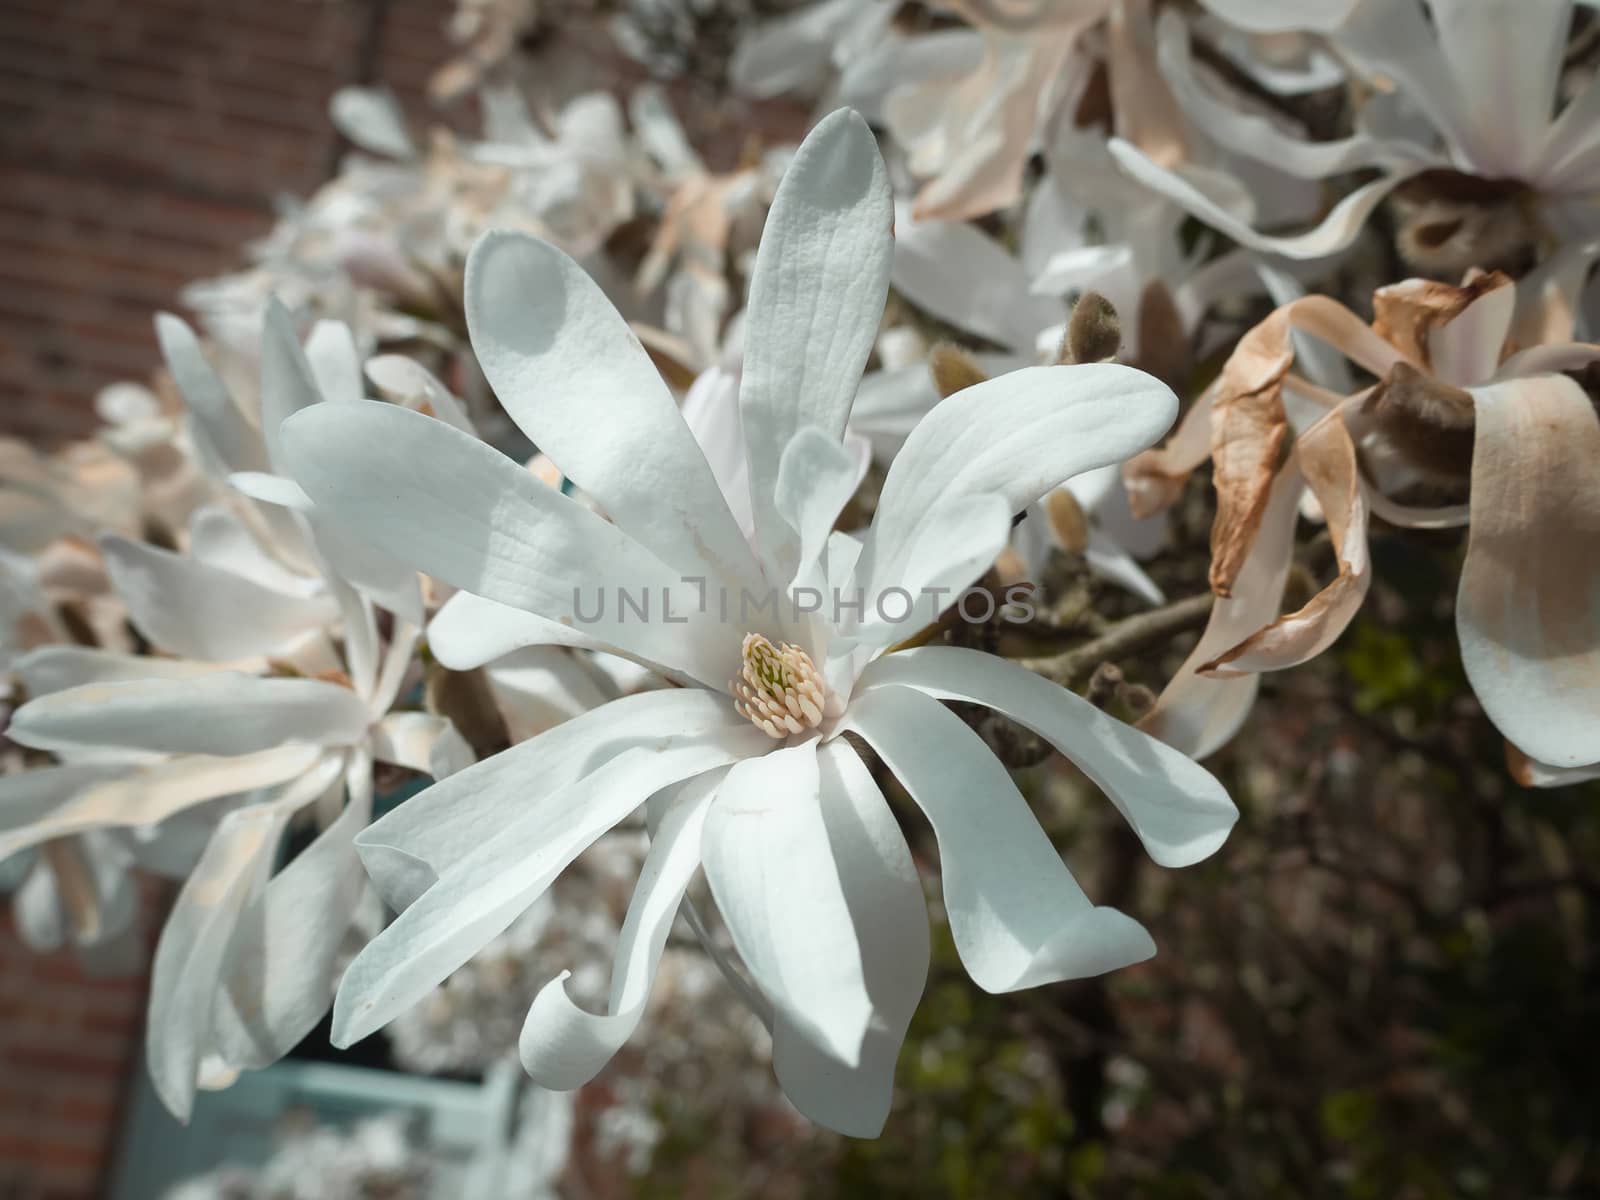 White magnolia flower head in the spring light